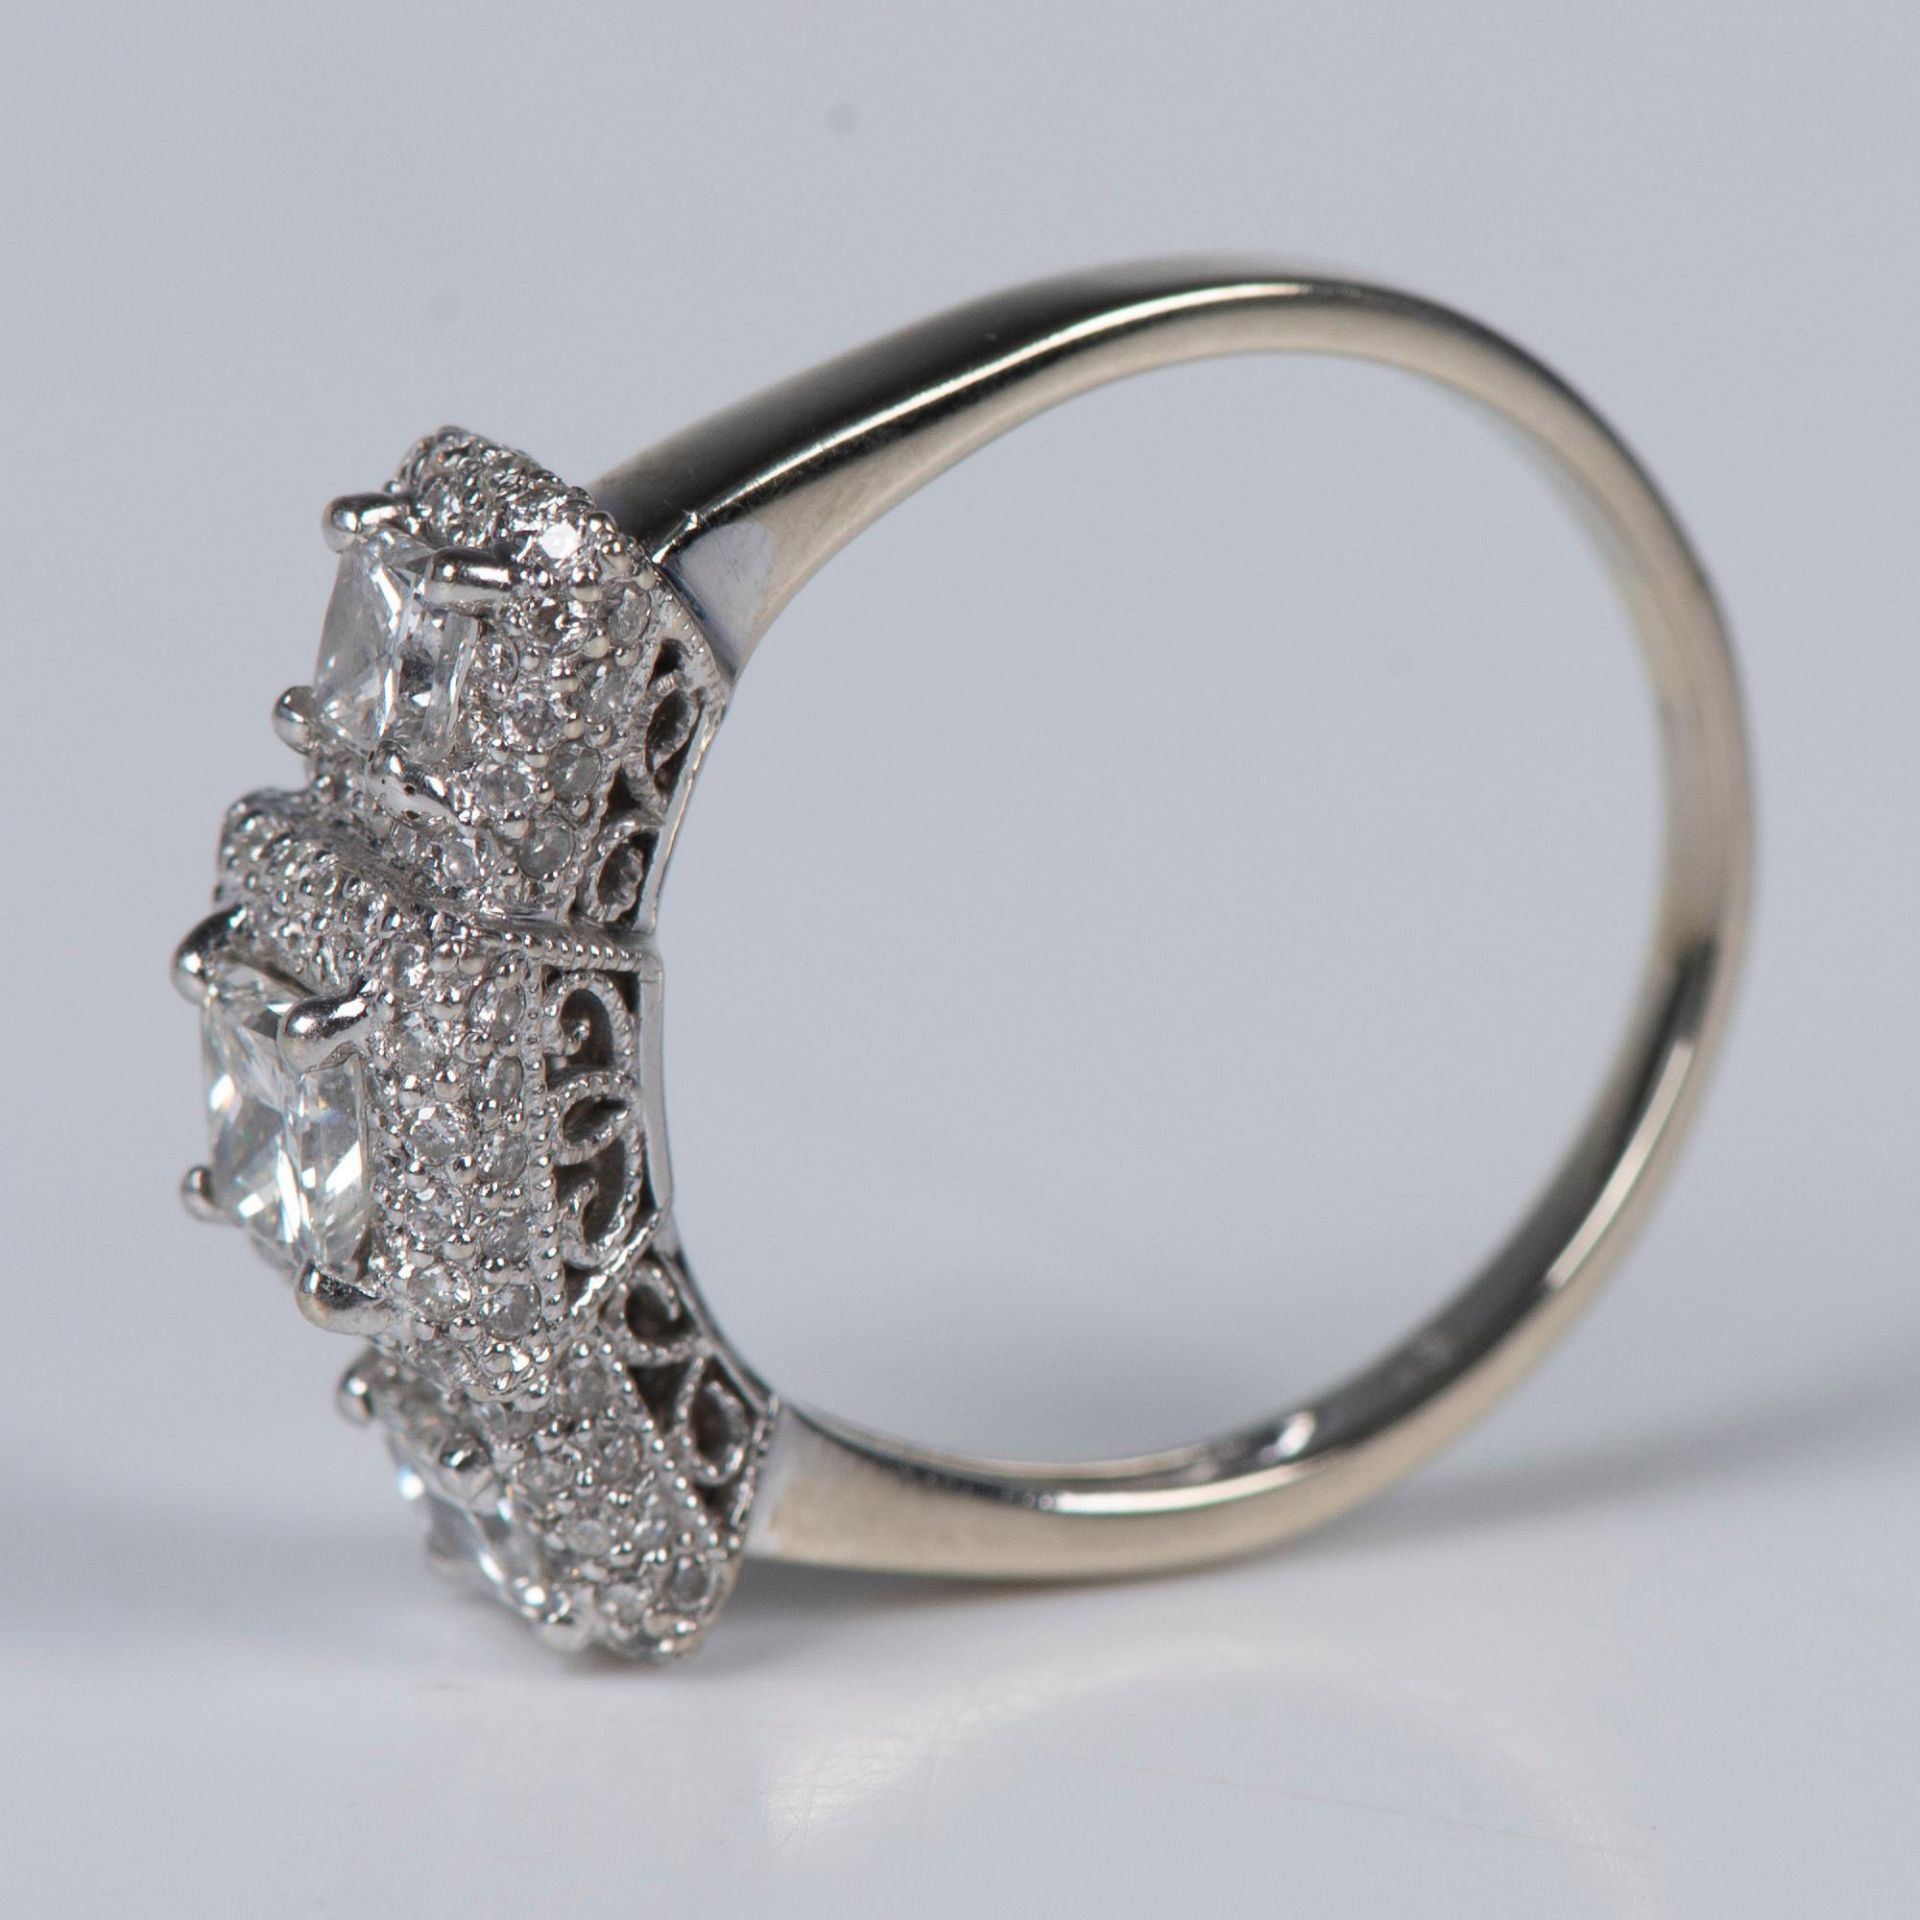 Gorgeous 14K White Gold & 1.5CTW Diamond Ring - Image 5 of 7